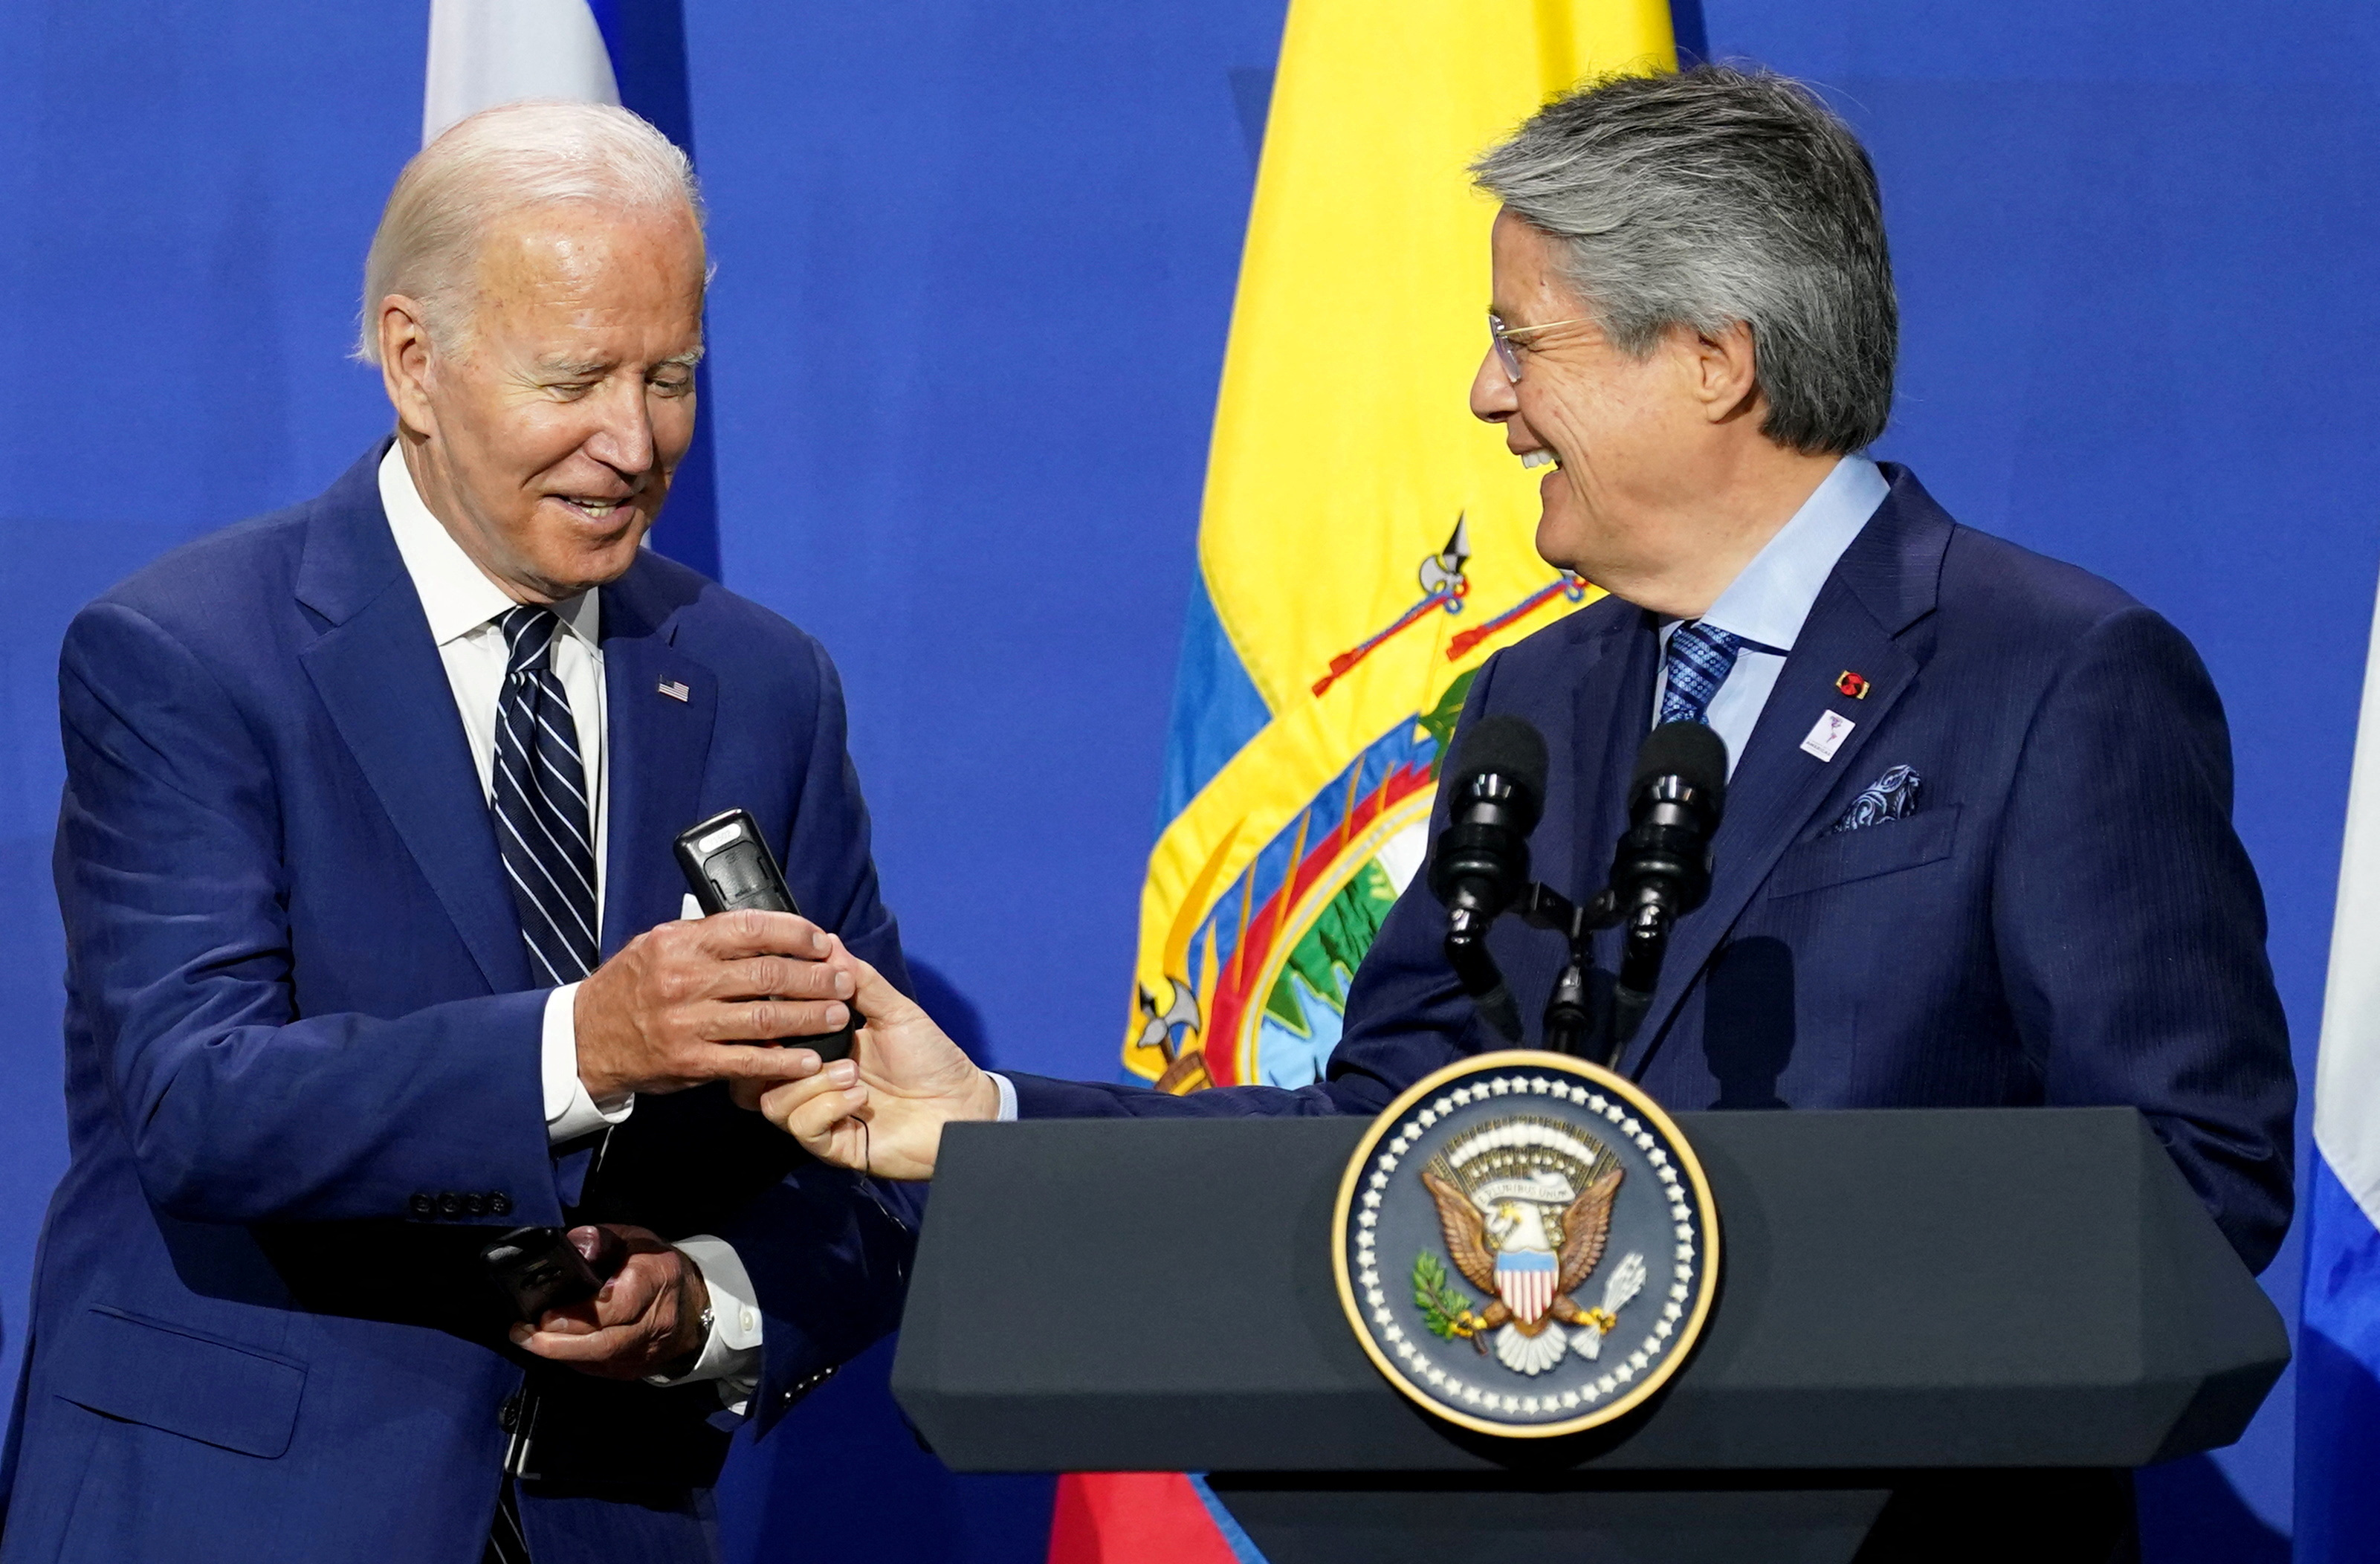 Guillermo Lasso propondrá a Joe Biden un tratado de libre comercio entre Ecuador y Estados Unidos - Infobae